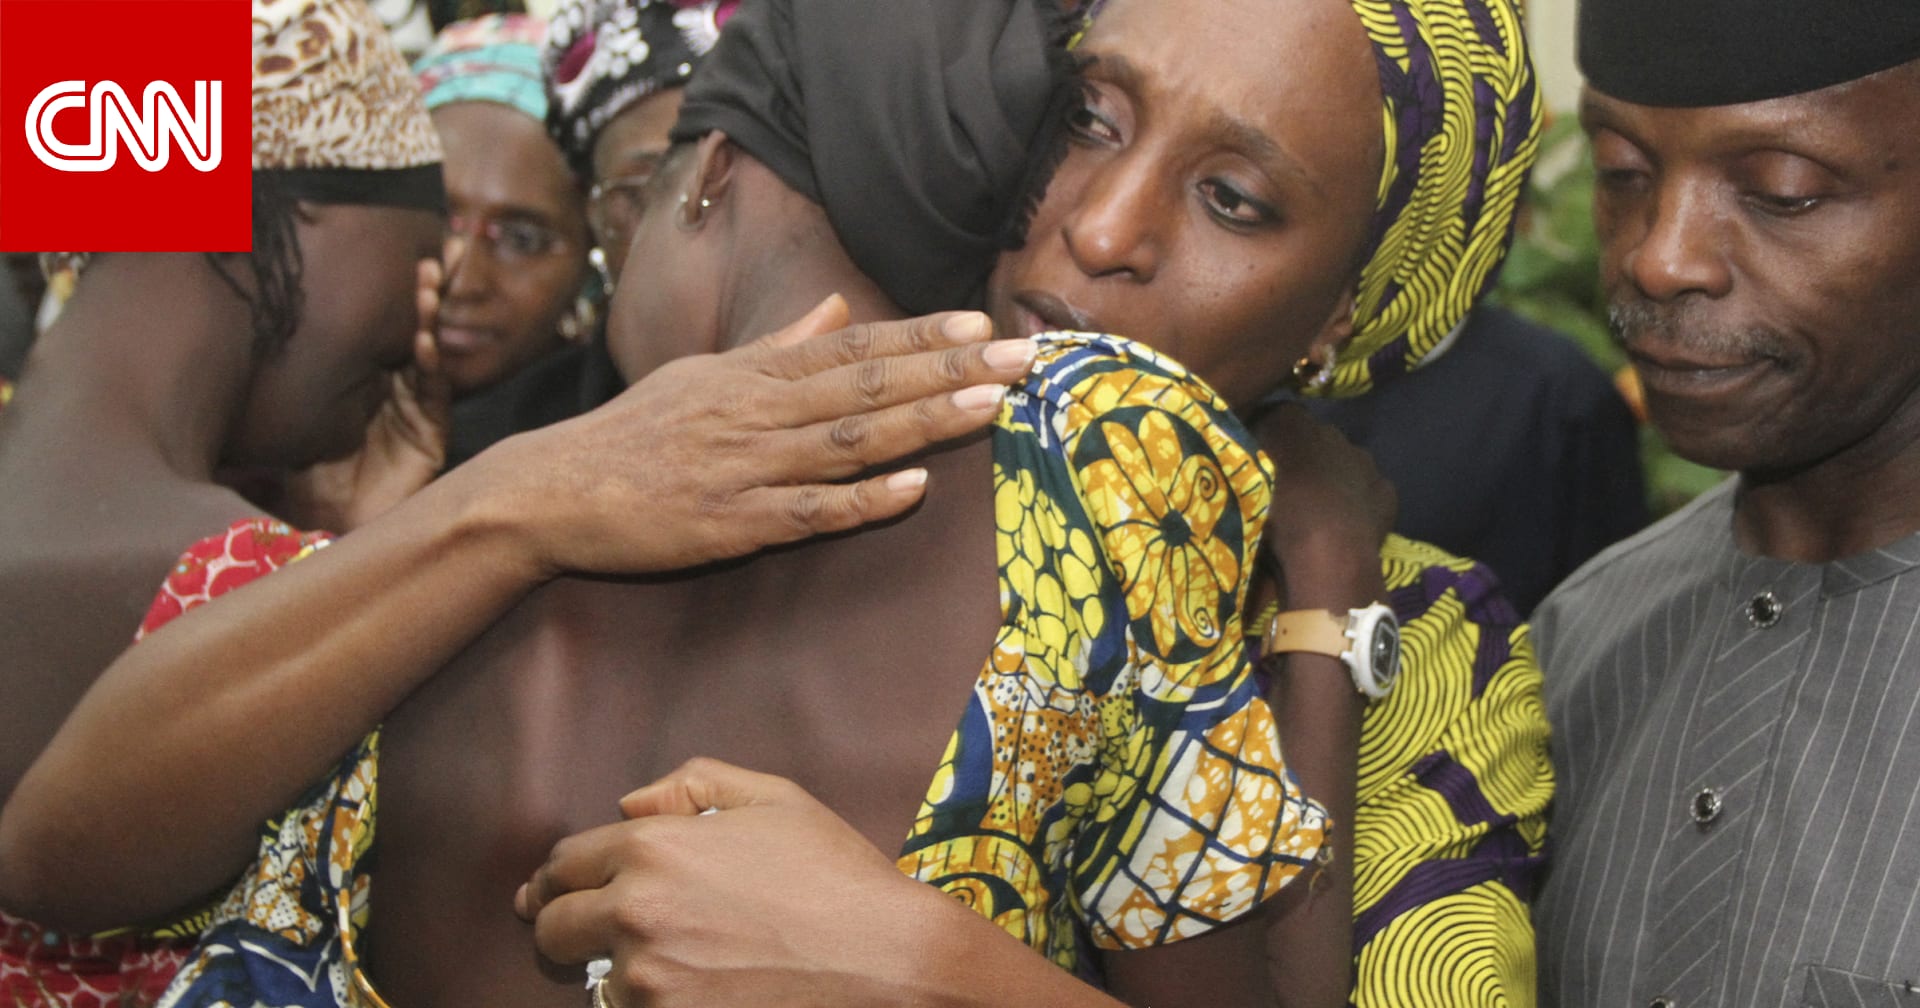 حامل ومعها 3 أطفال.. انقاذ تلميذة اختطفتها جماعة بوكو حرام قبل 10 سنوات من مدرسة في نيجيريا